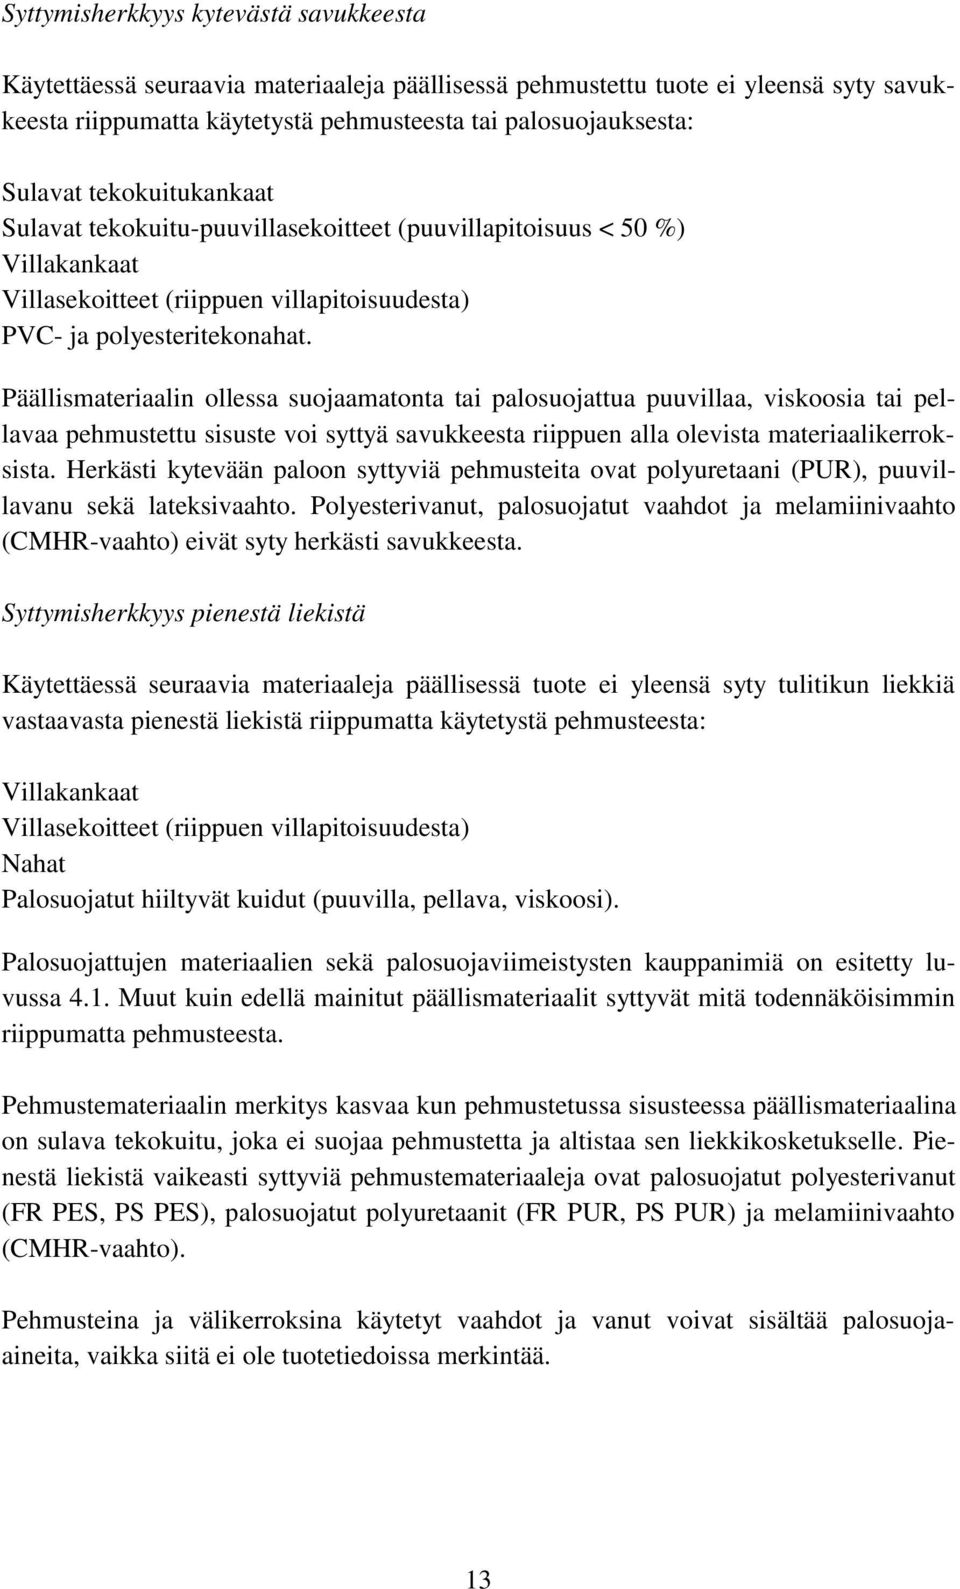 SISUSTEIDEN PALOTURVALLISUUS - PDF Ilmainen lataus